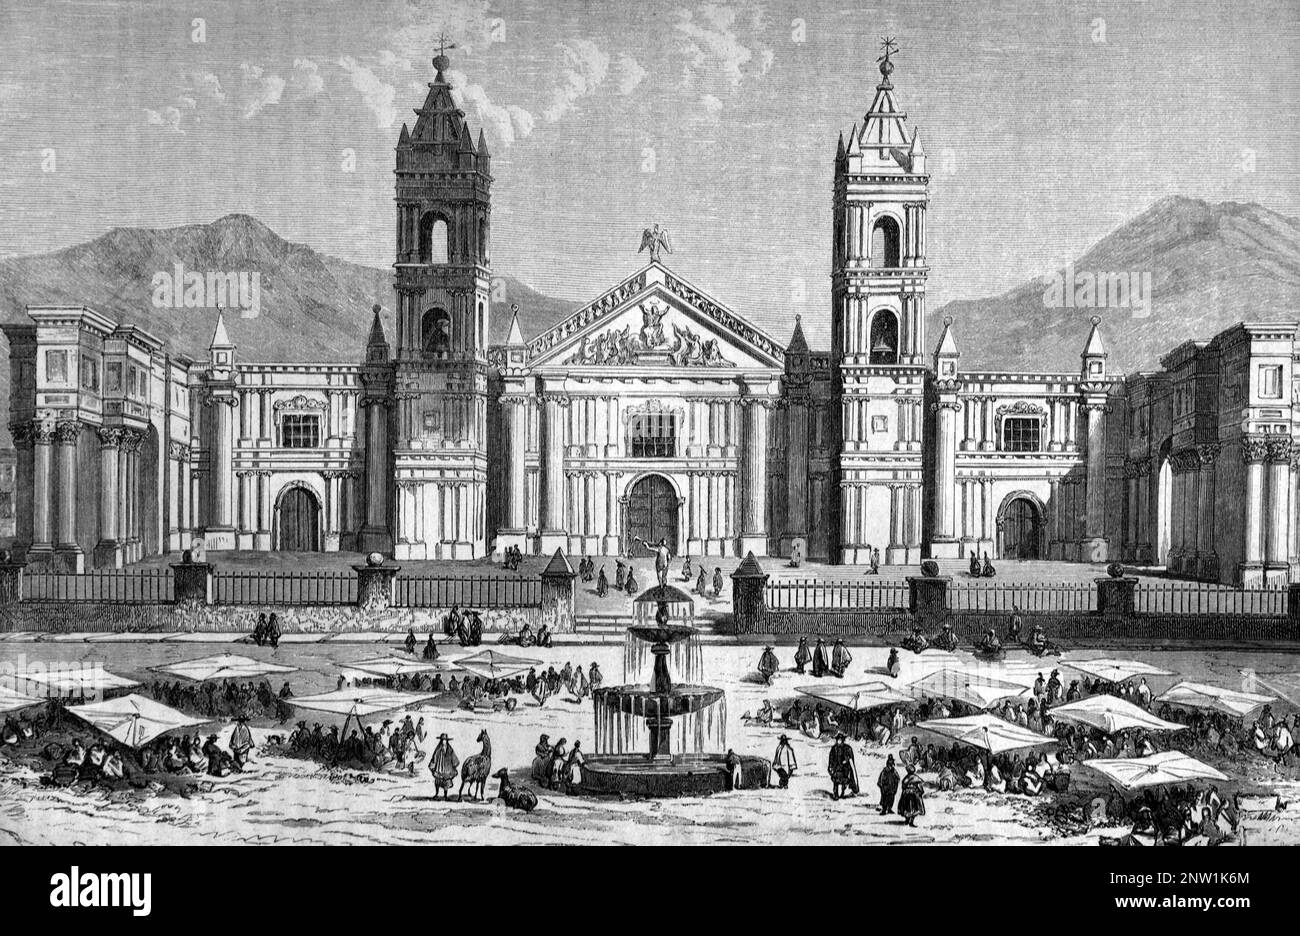 Basilique Cathédrale d'Arequipa (F. 1540) sur la place principale, ou Plaza de Armas, Arequipa Pérou. Gravure ancienne ou illustration 1862 Banque D'Images